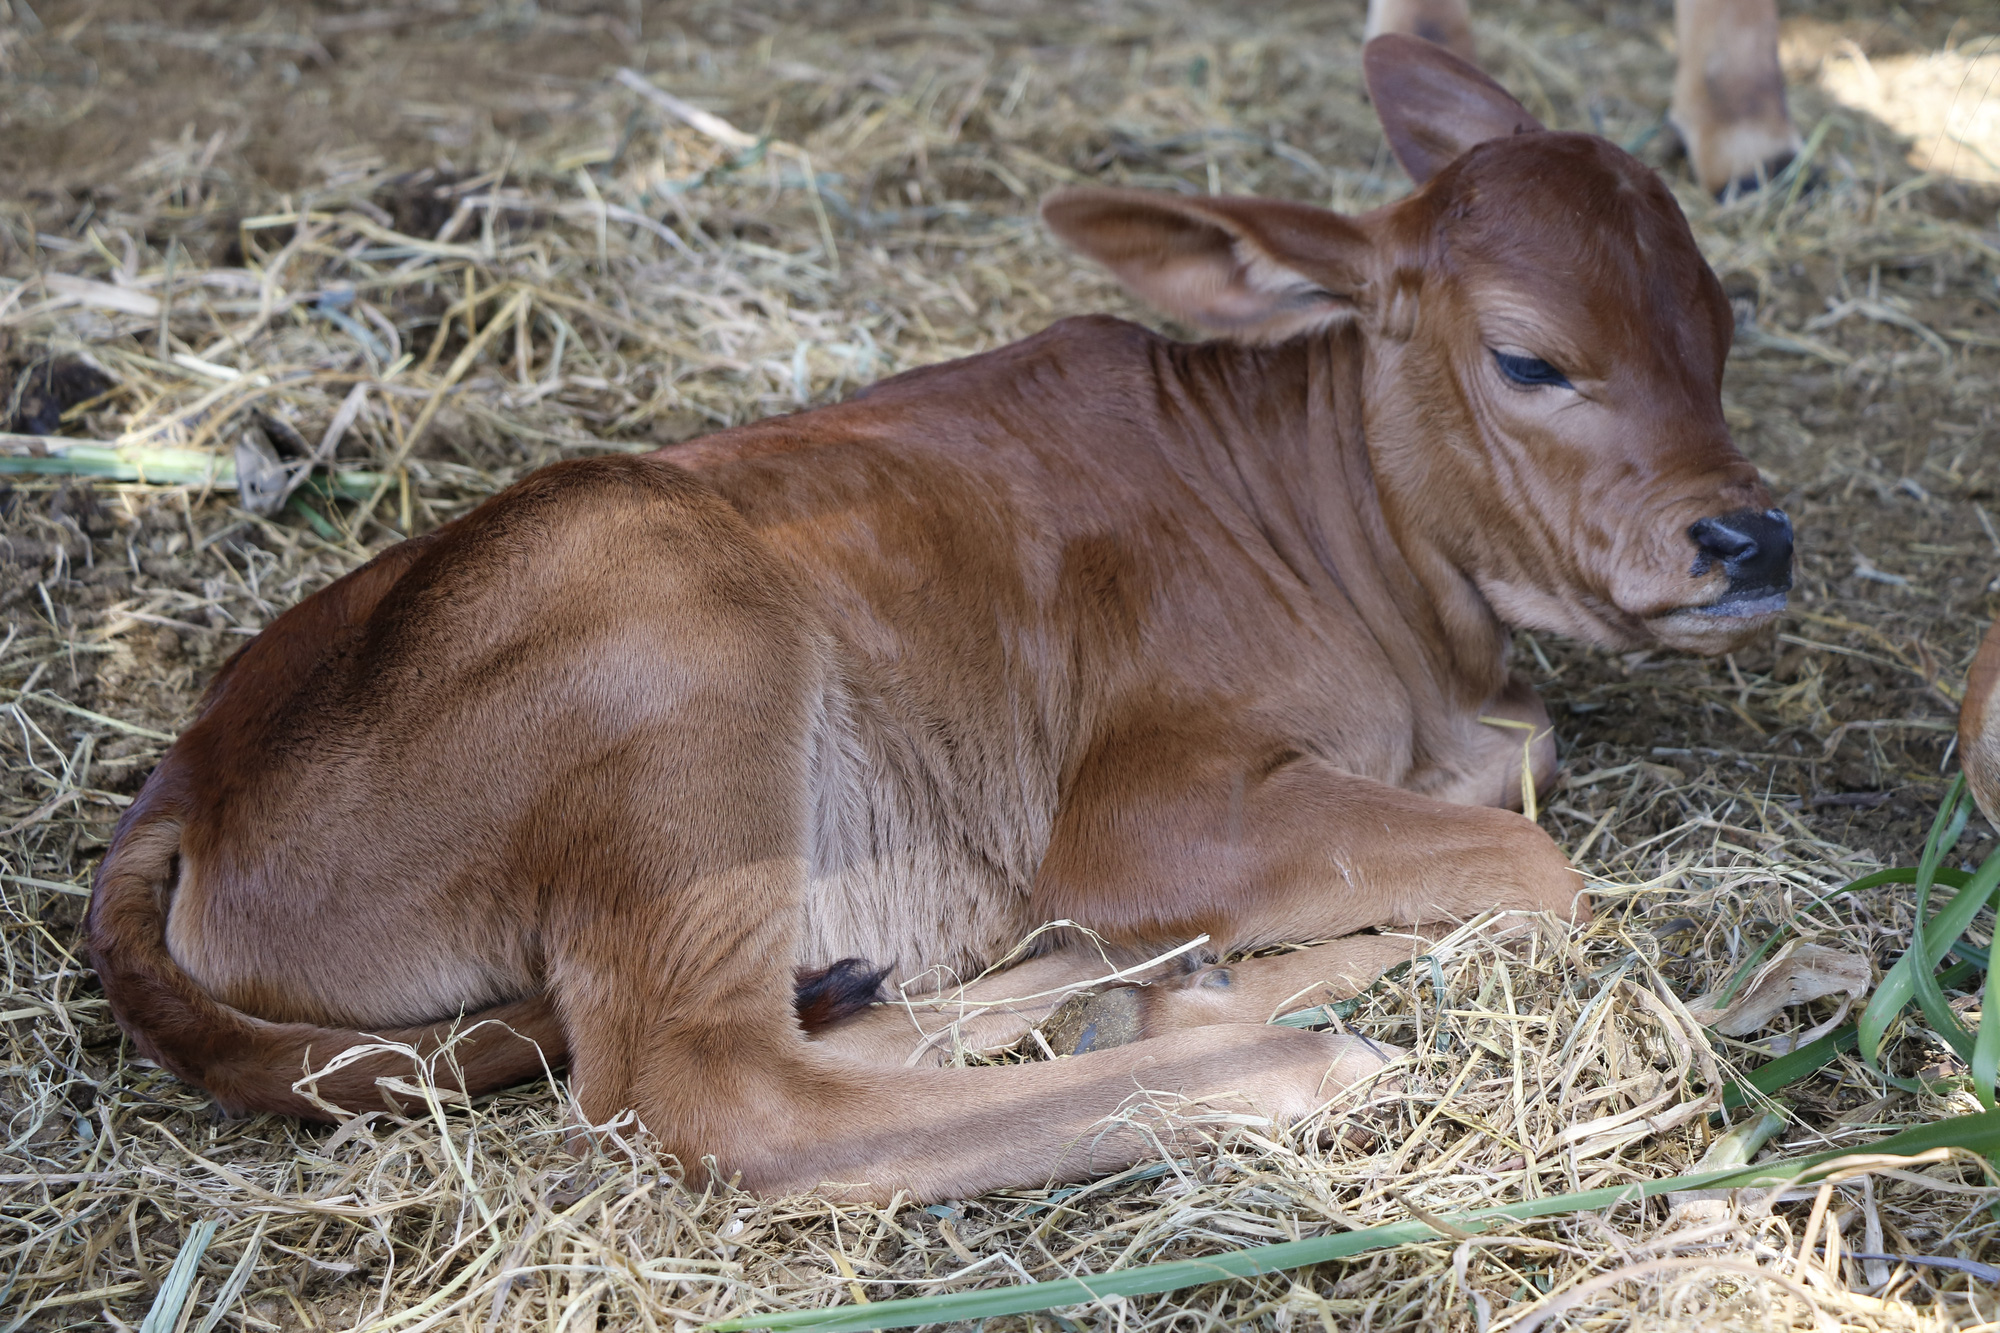 Bê vừa sinh phải uống sữa của chính bò cái đẻ ra